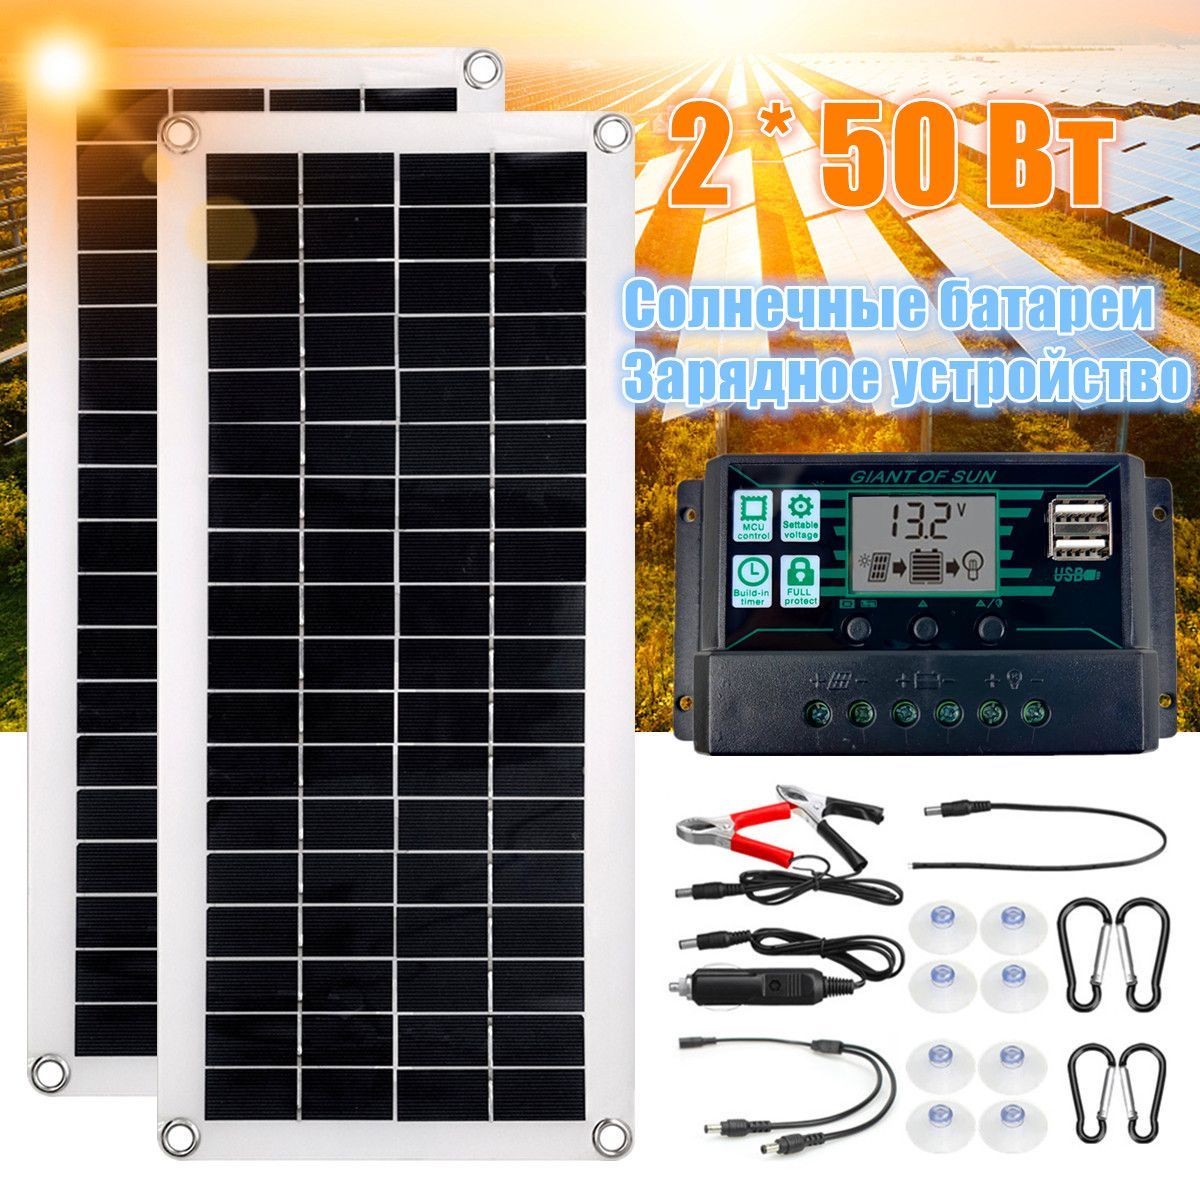 Обзор солнечного зарядного устройства Allpowers 21 Watt (2 USB)